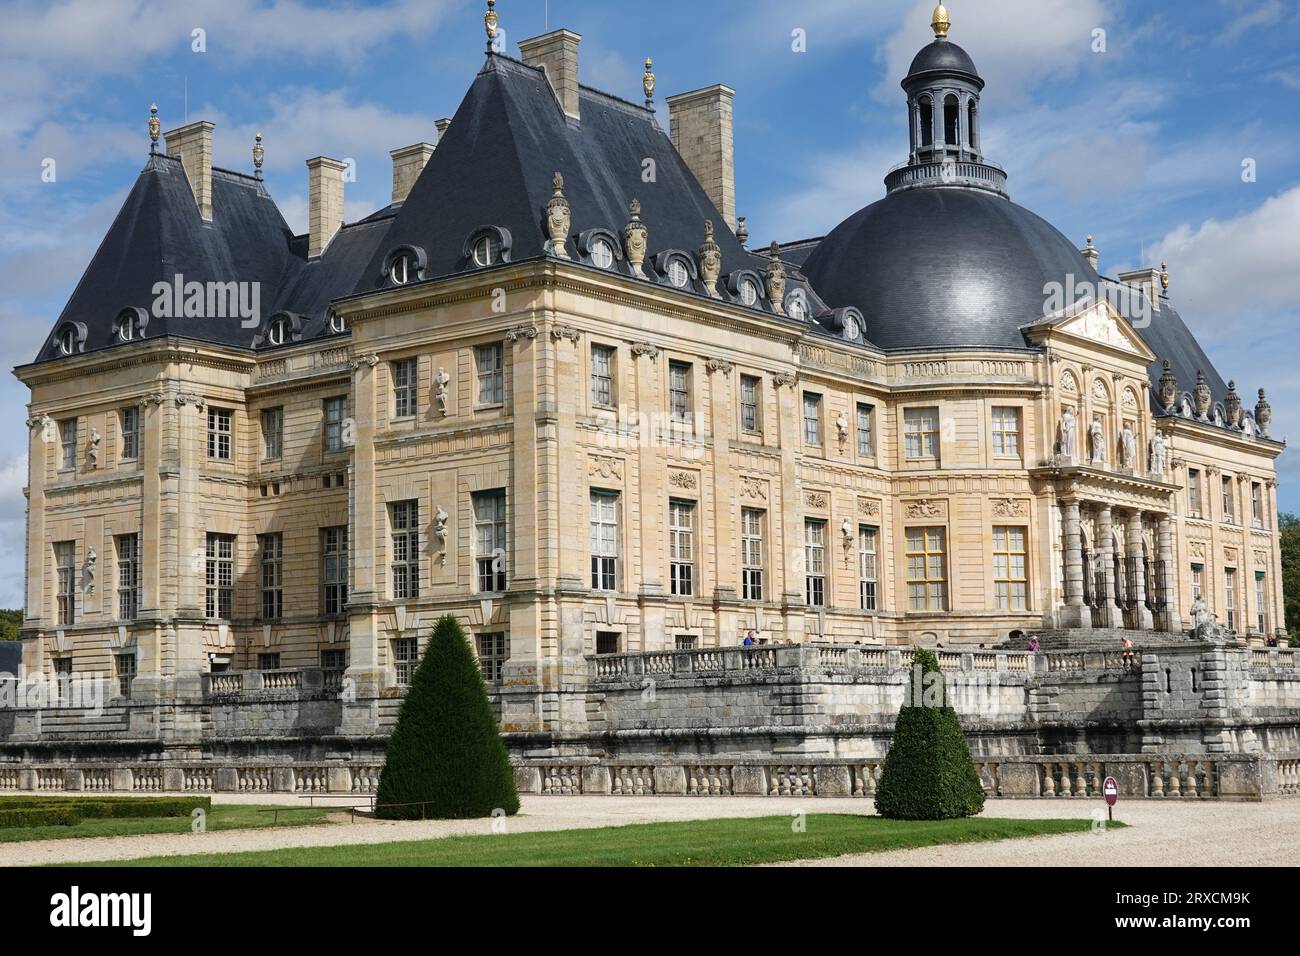 "French Châteaux", "Château de Vaux-le-Vicomte", " Baroque French château", "architect Louis le Vau", "landscape architect André le Nôtre" Foto Stock